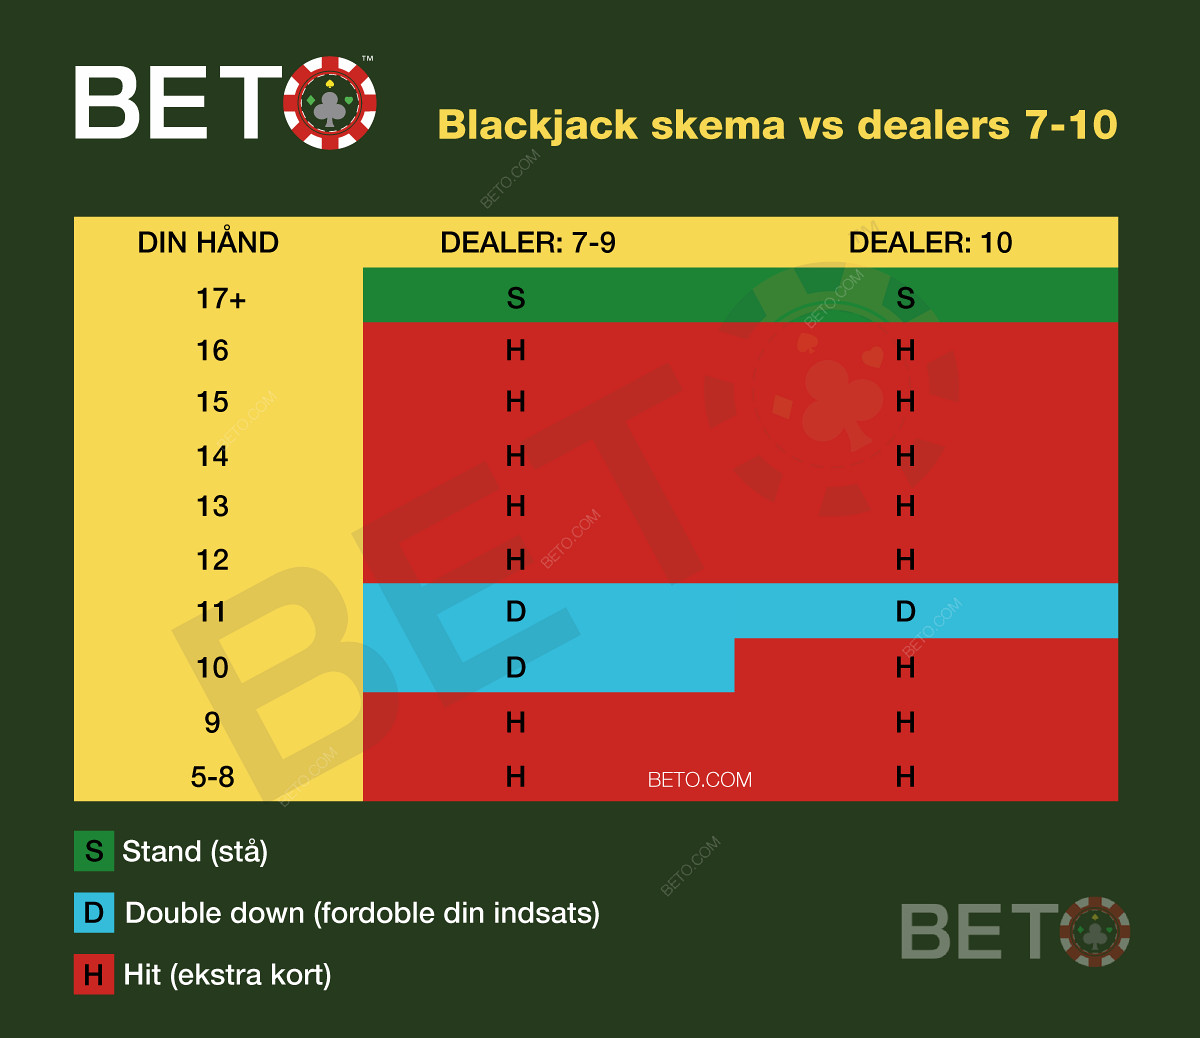 Blackjack skema vs dealer 7-10